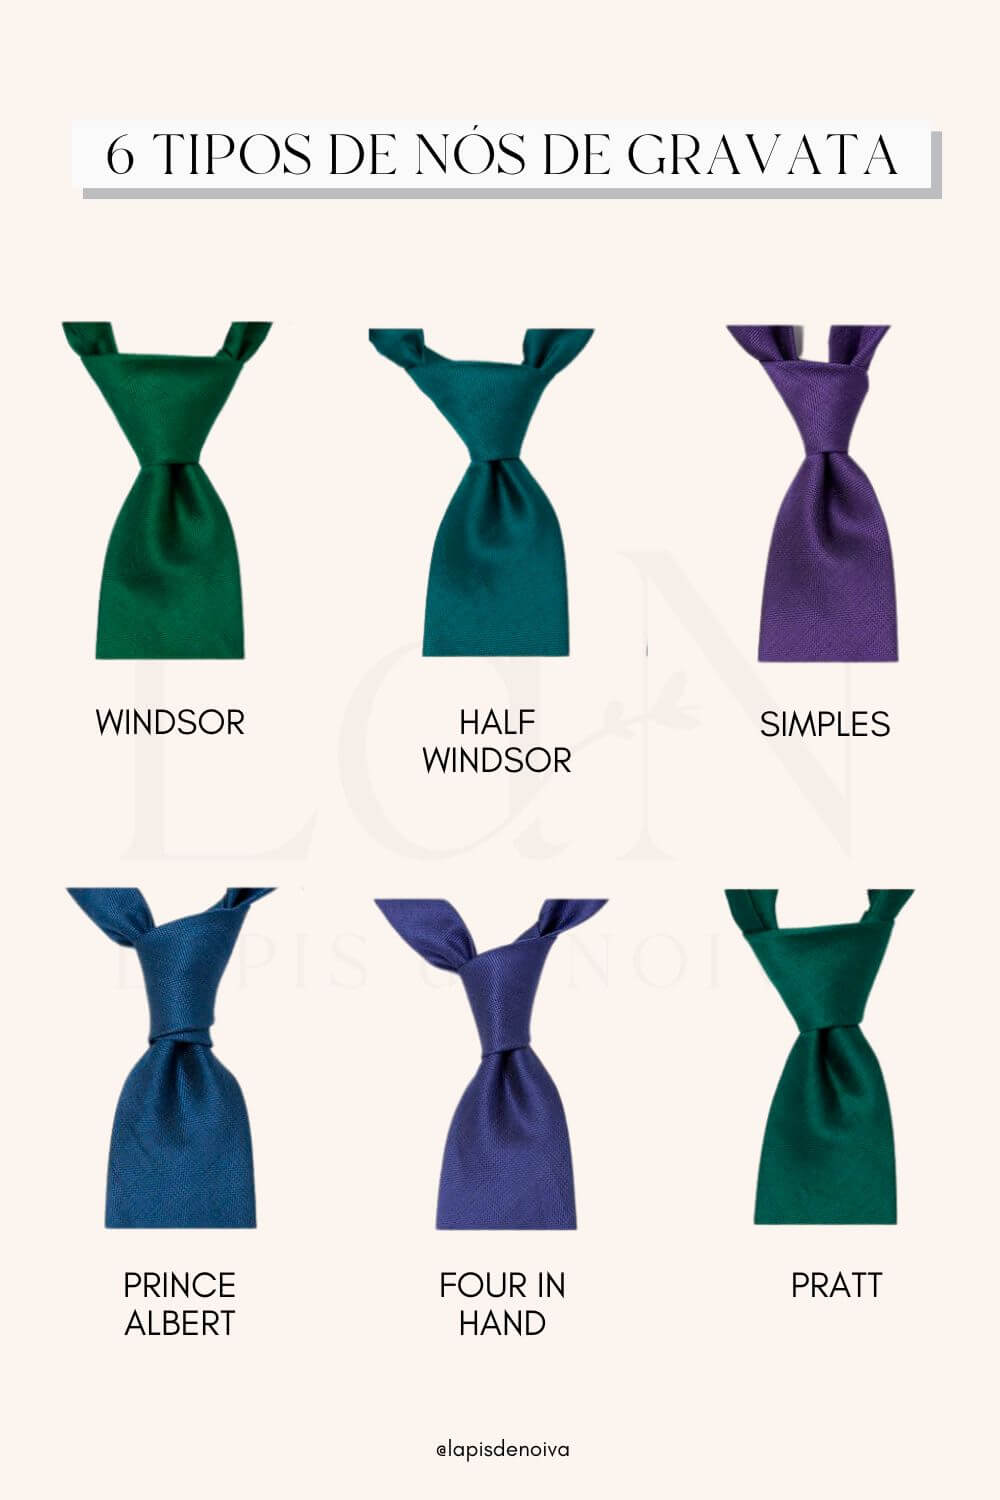 imagem com diferentes tipos de nós de gravata de noivo